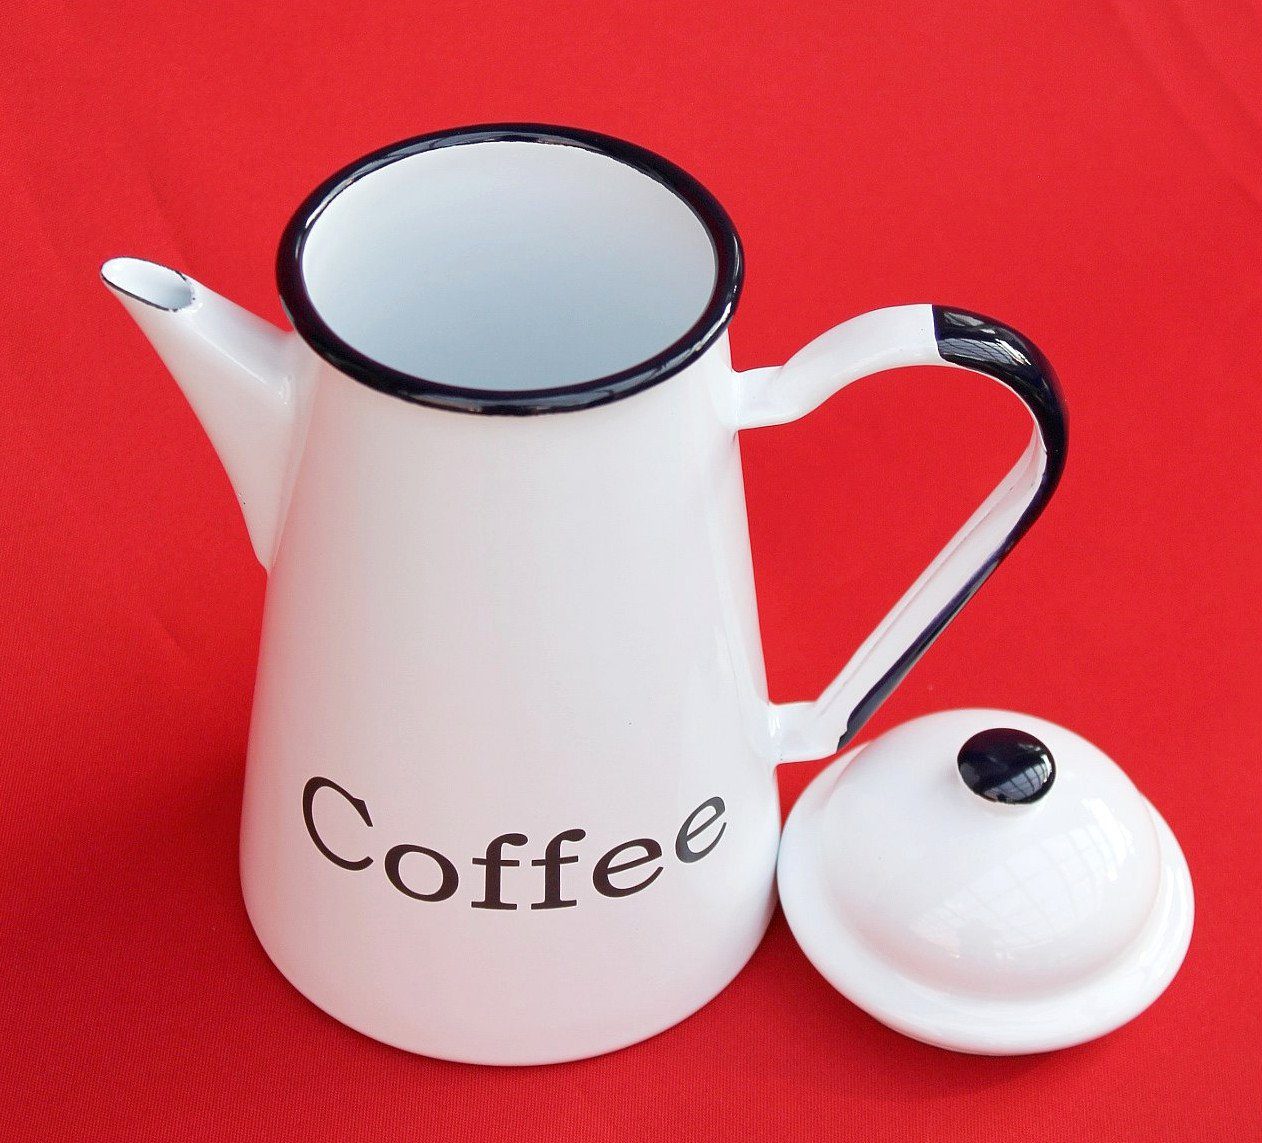 Nostalgie L DanDiBo Kaffeekanne Emaille Teekanne emailliert cm 578TB Kanne Coffee Wasserkanne 1,0 Kaffeekanne 22